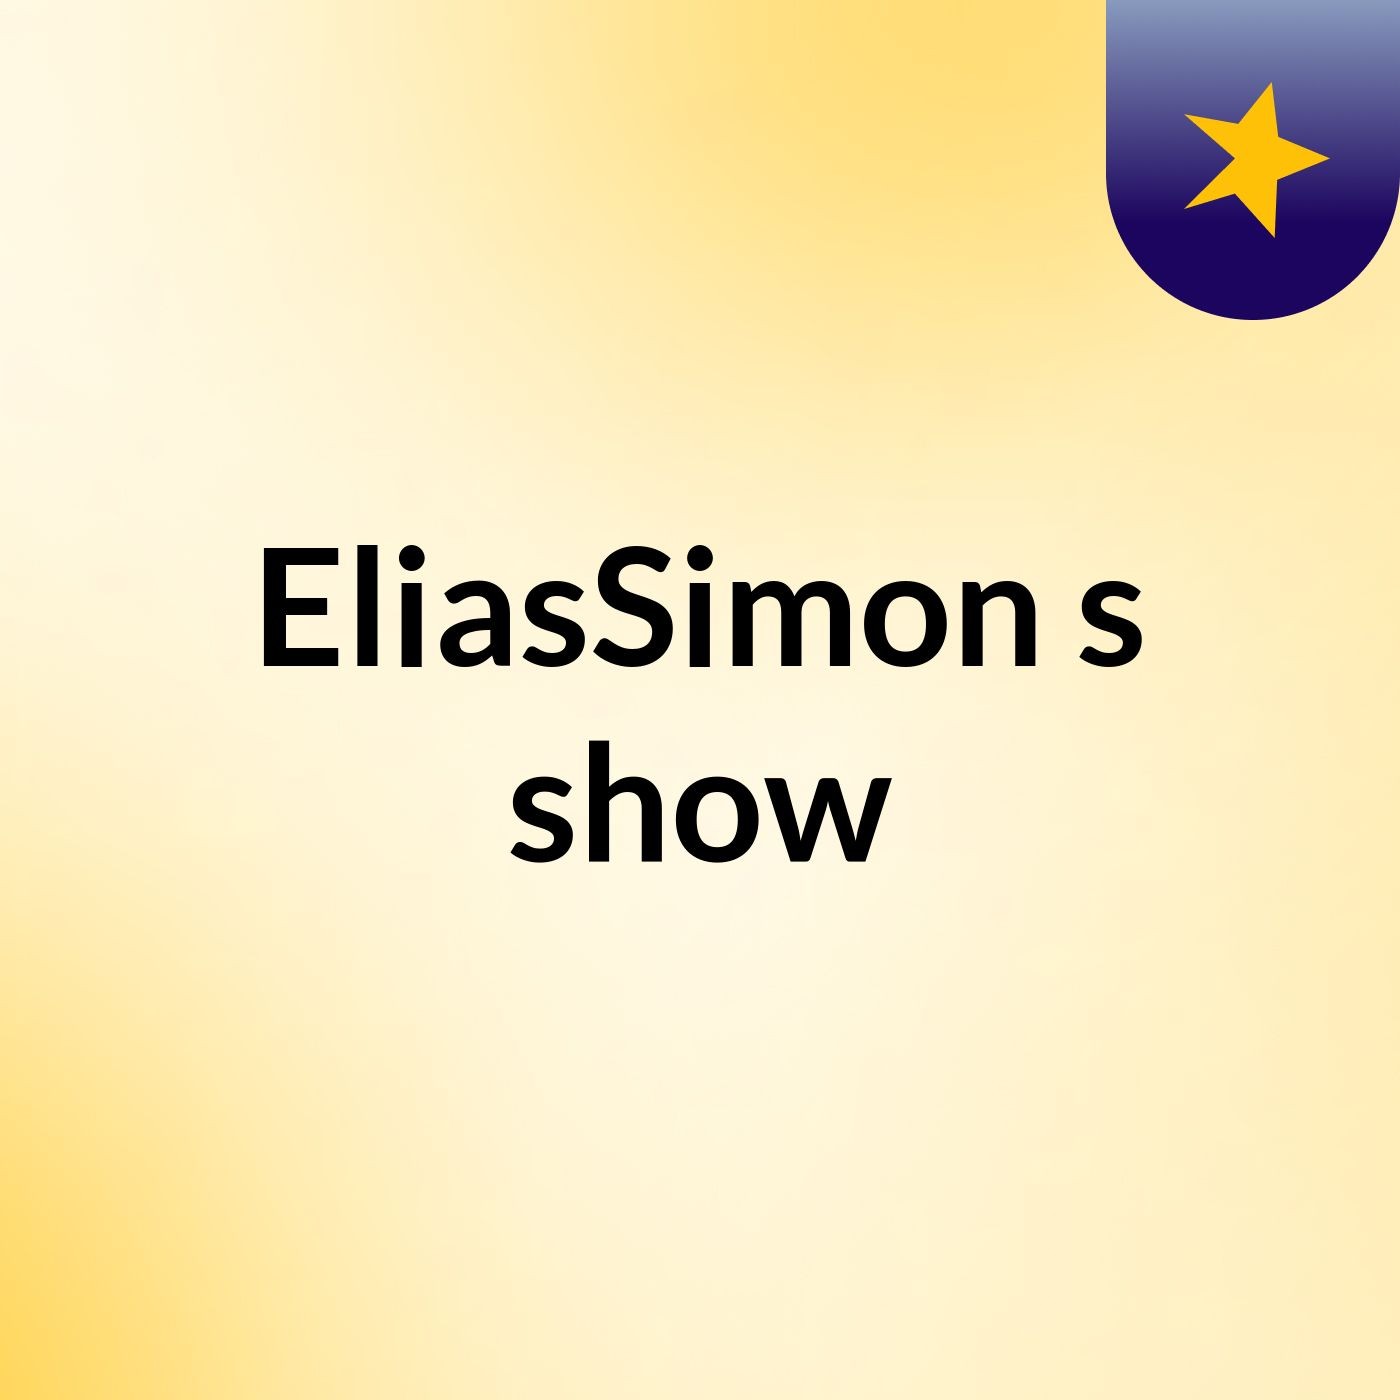 EliasSimon's show